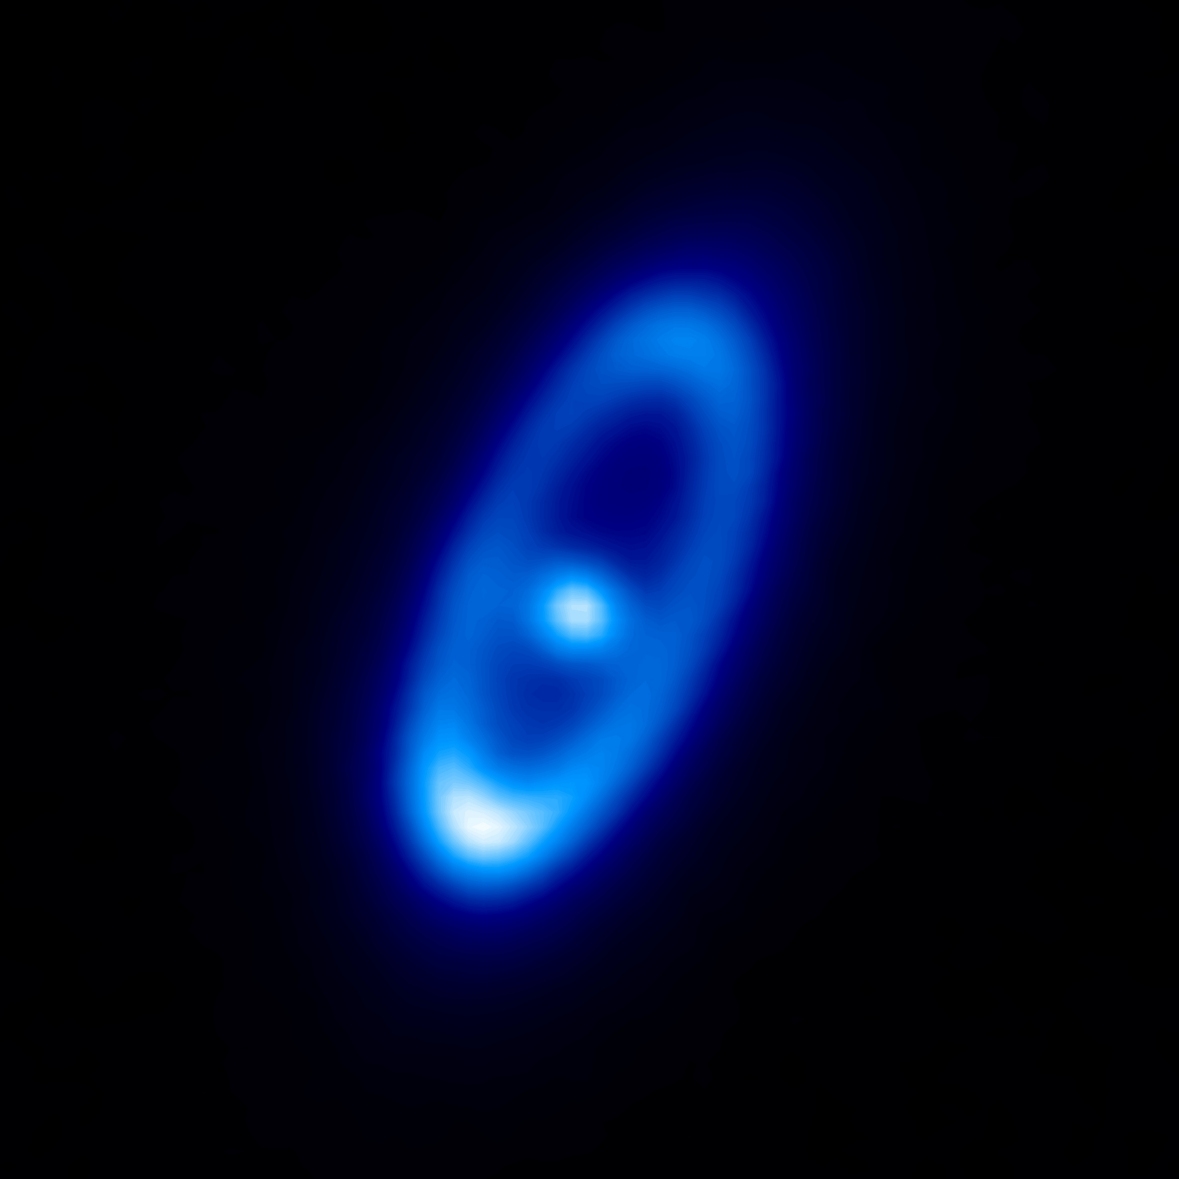 Herschel PACS 70 Î¼m image of Fomalhaut